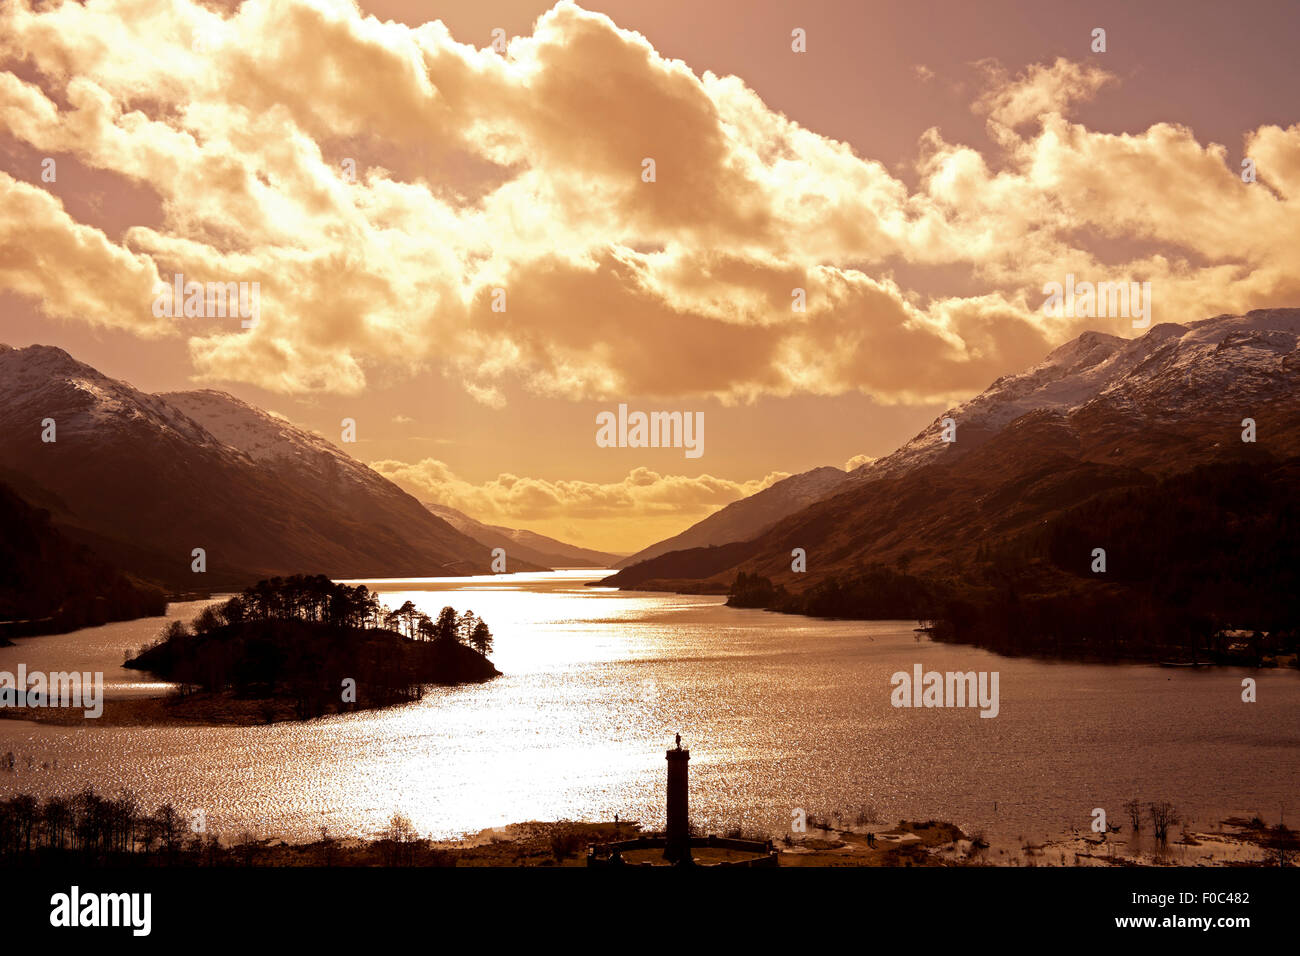 Sunset on Loch Shiel, Glenfinnan Lochaber, Scotland Stock Photo